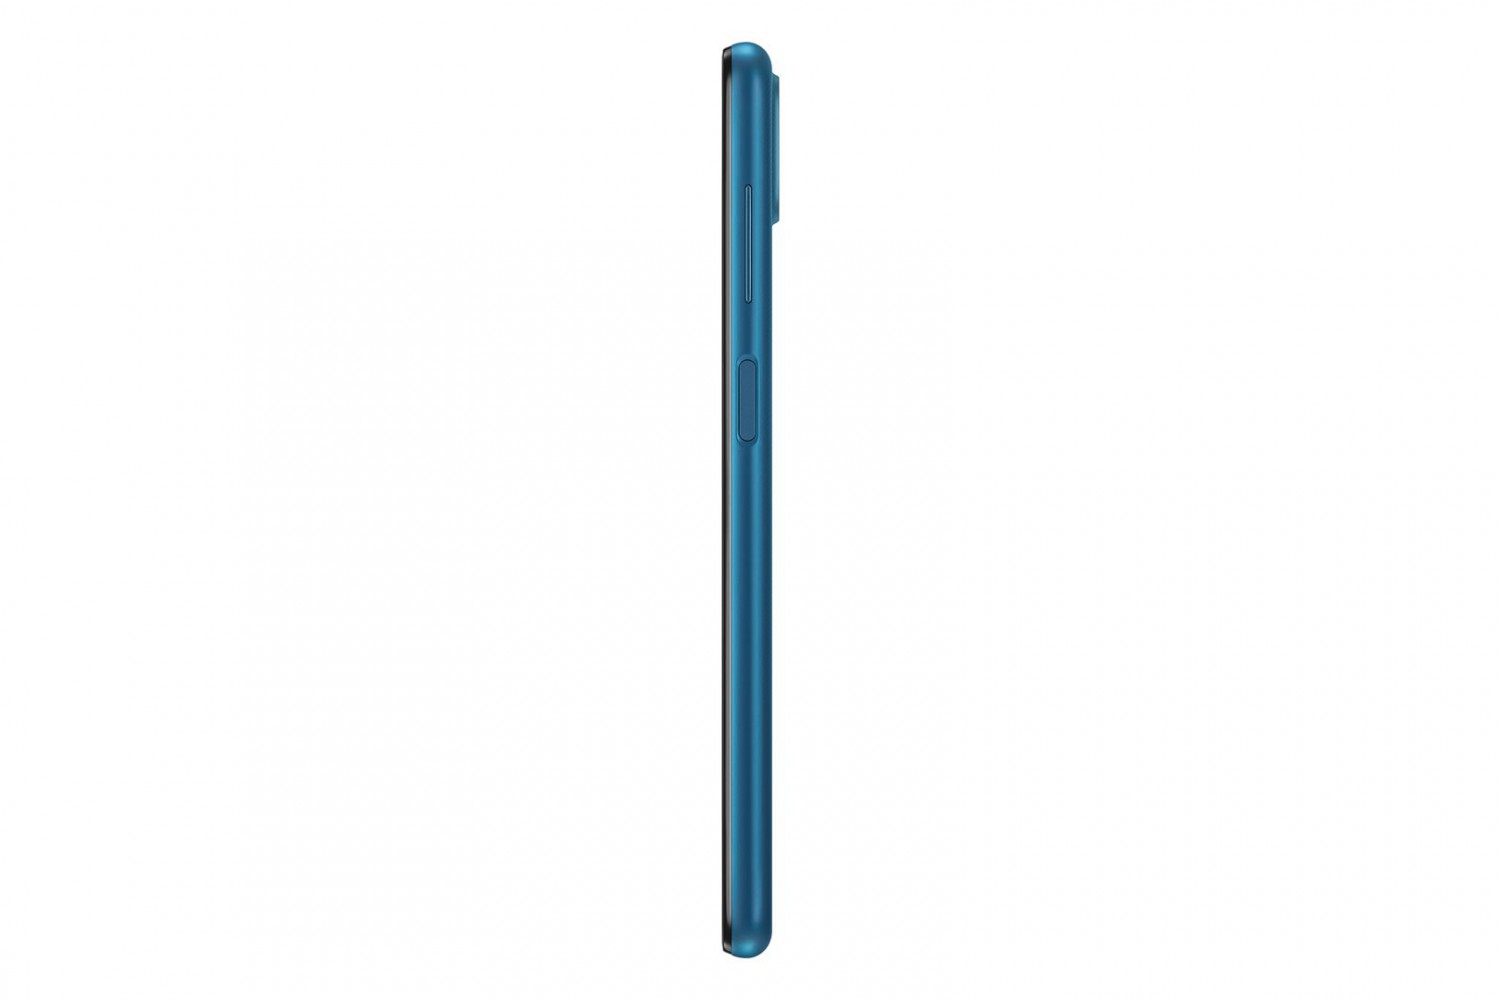 Samsung Galaxy A12 (SM-A125) 3GB/32GB modrá